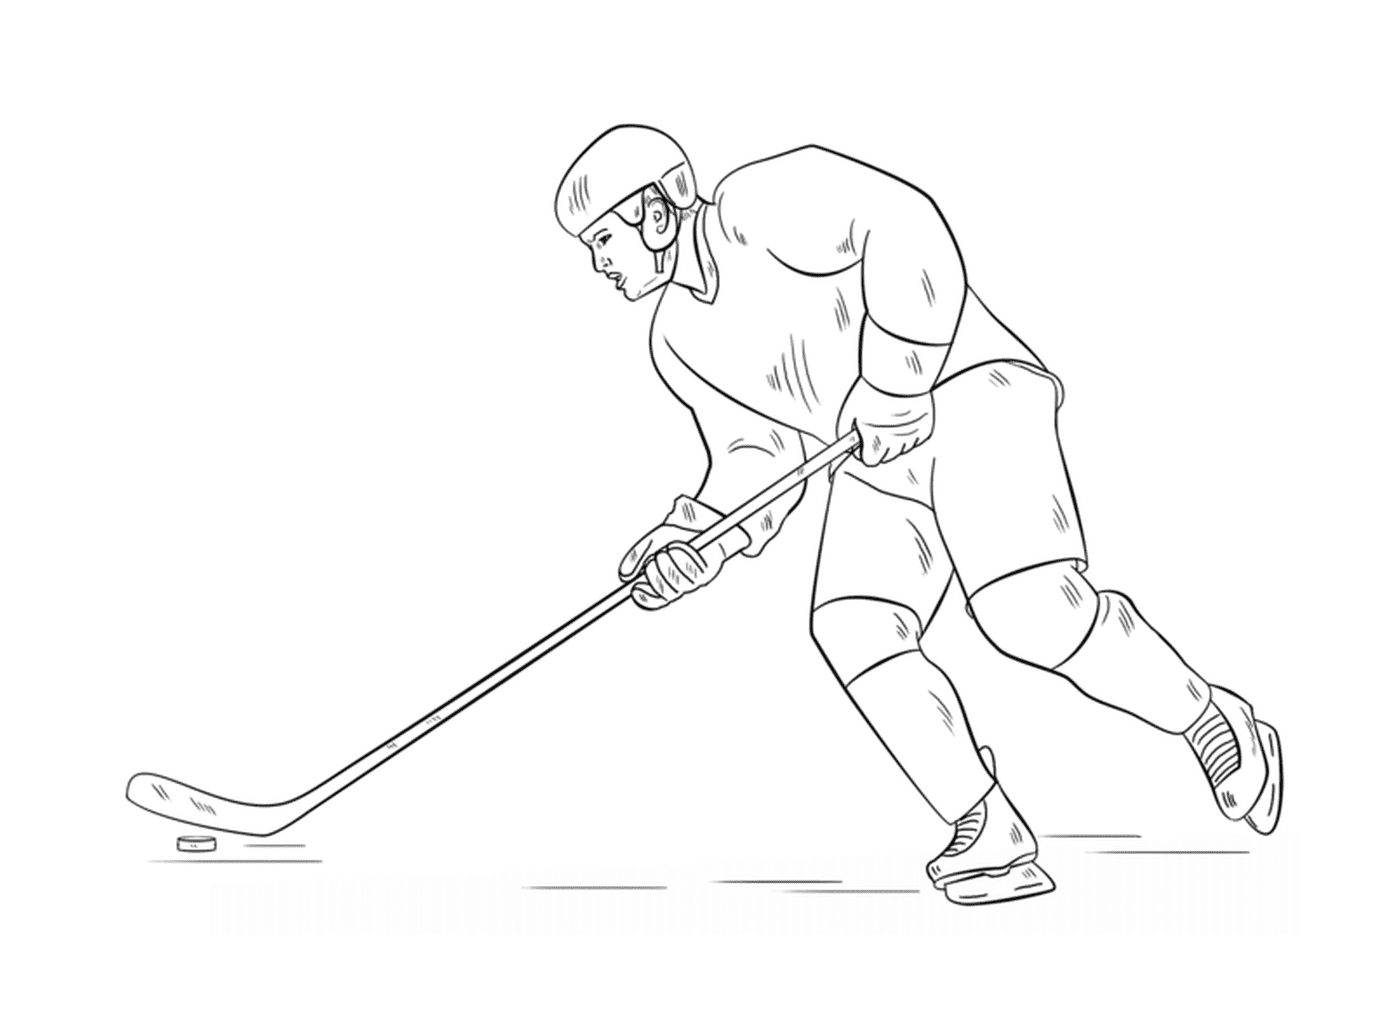  Hockeyspieler, leidenschaftlich 